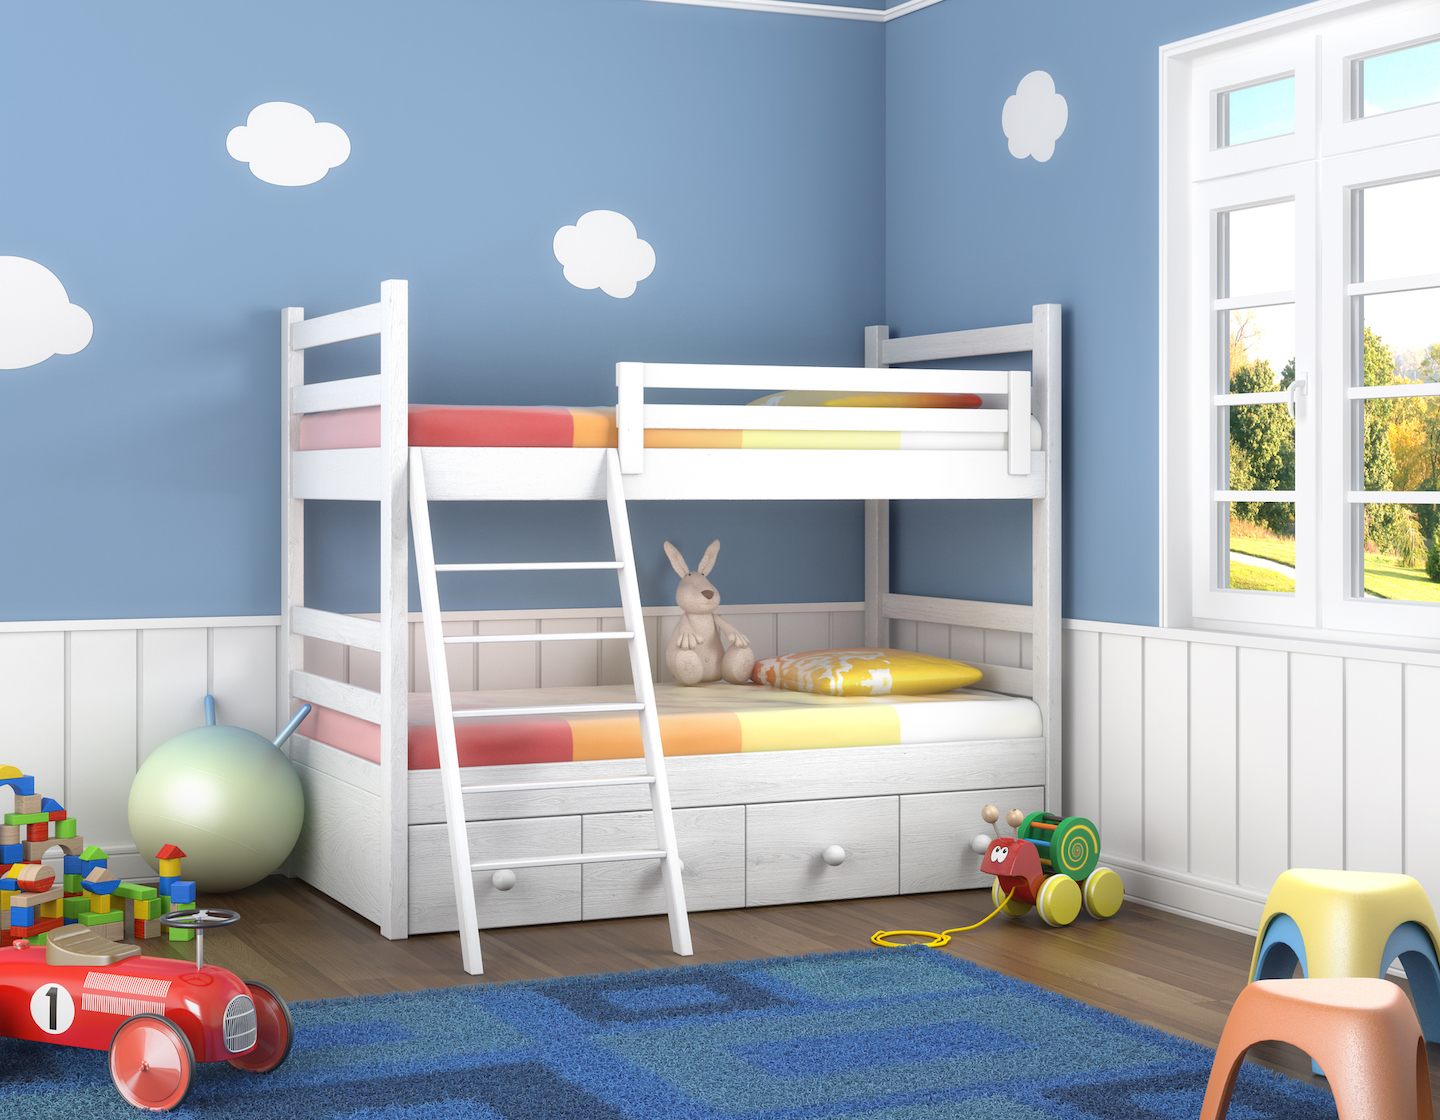 Bedroom toys. Двухэтажная кровать для детей. Детская спальня. Двухъярусная кровать для подростков. Детская комната с игрушками двухэтажная кровать.